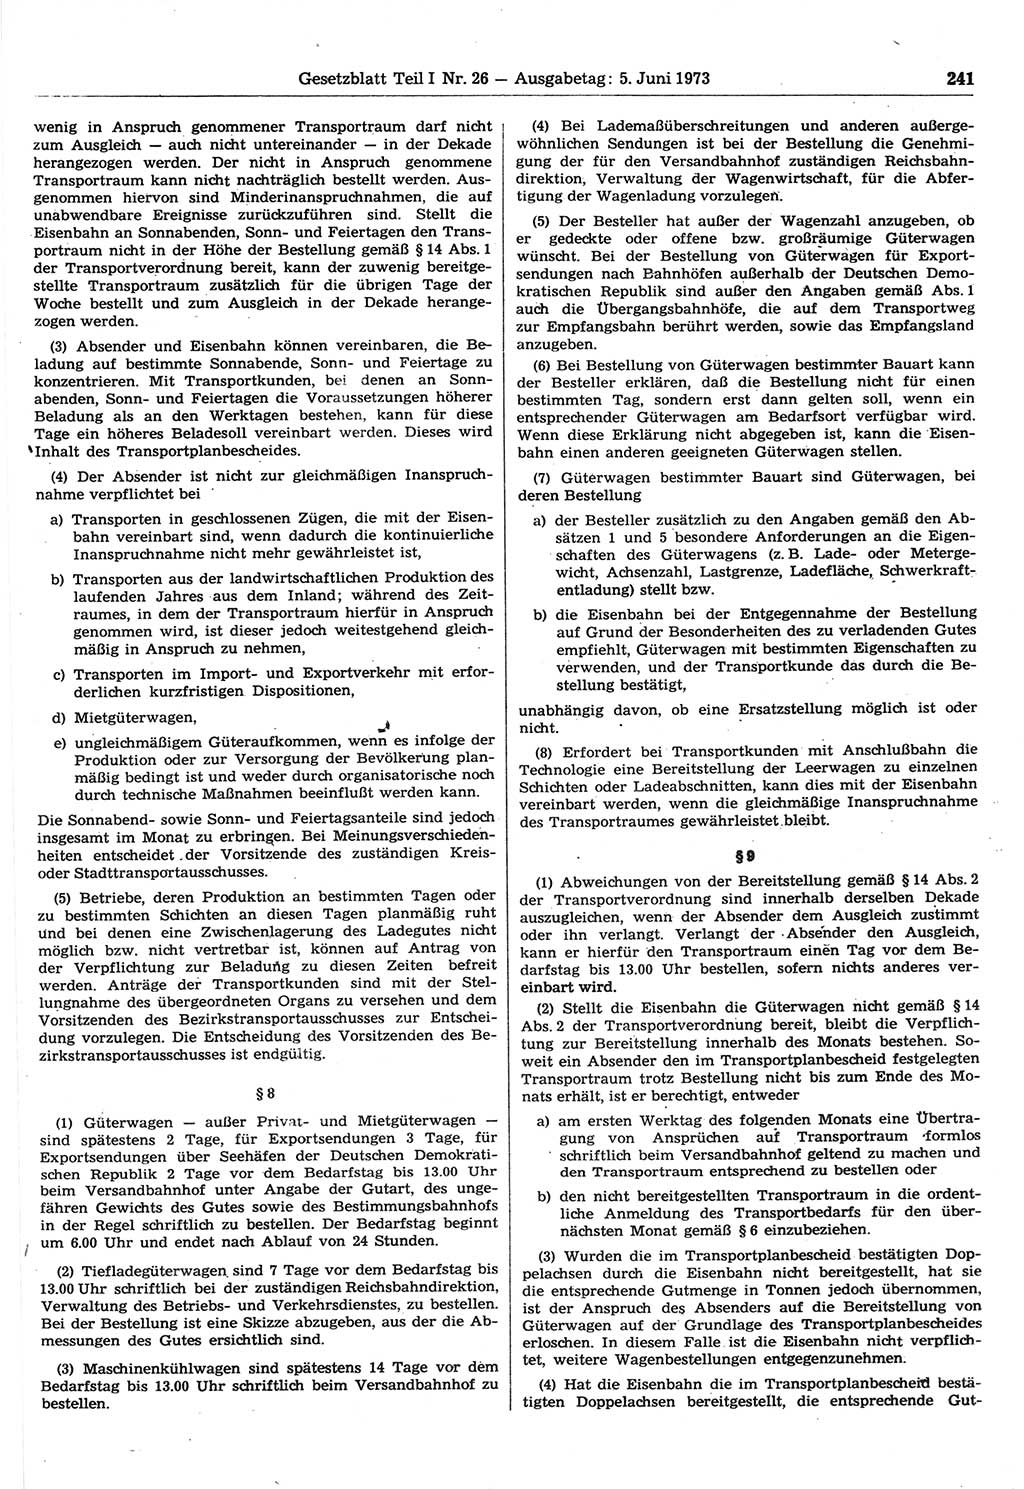 Gesetzblatt (GBl.) der Deutschen Demokratischen Republik (DDR) Teil Ⅰ 1973, Seite 241 (GBl. DDR Ⅰ 1973, S. 241)